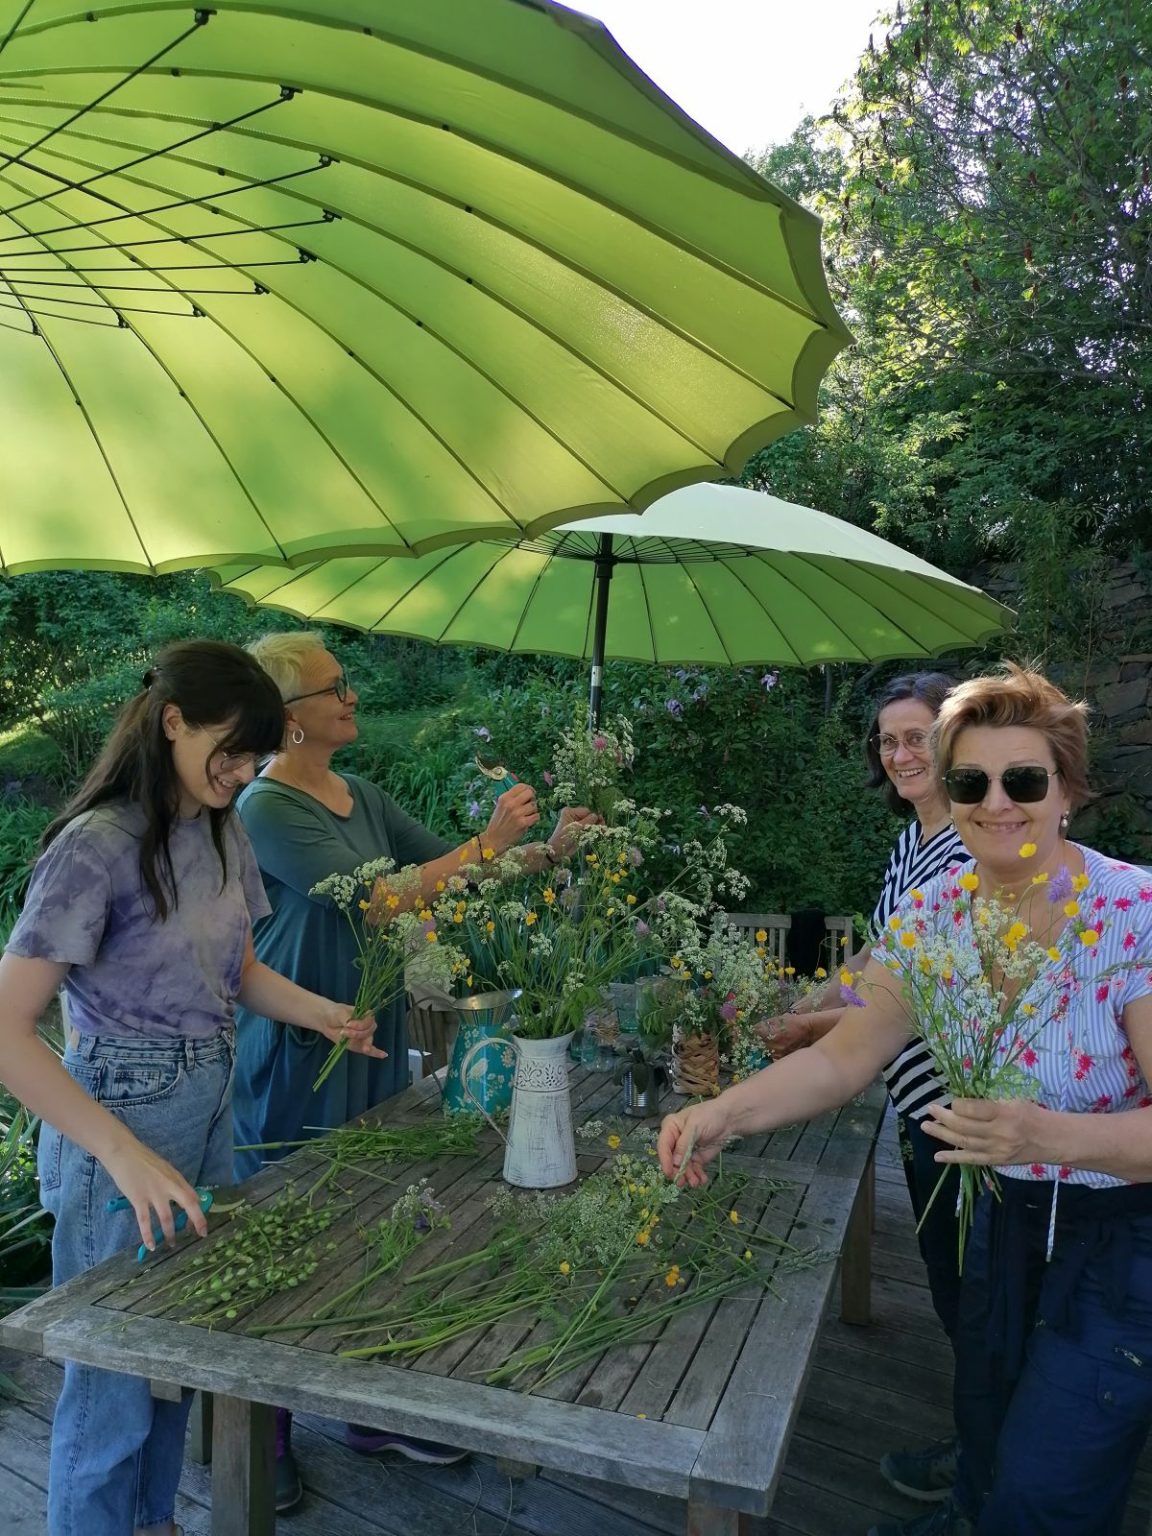 Workshop Naturmaterialien aus dem Garten, Blumenstrauß, Gardenagartenschere - The Heartgardener - Die Herzensgärtnerin - Patrizia Haslinger - DIY - Workshops im Garten